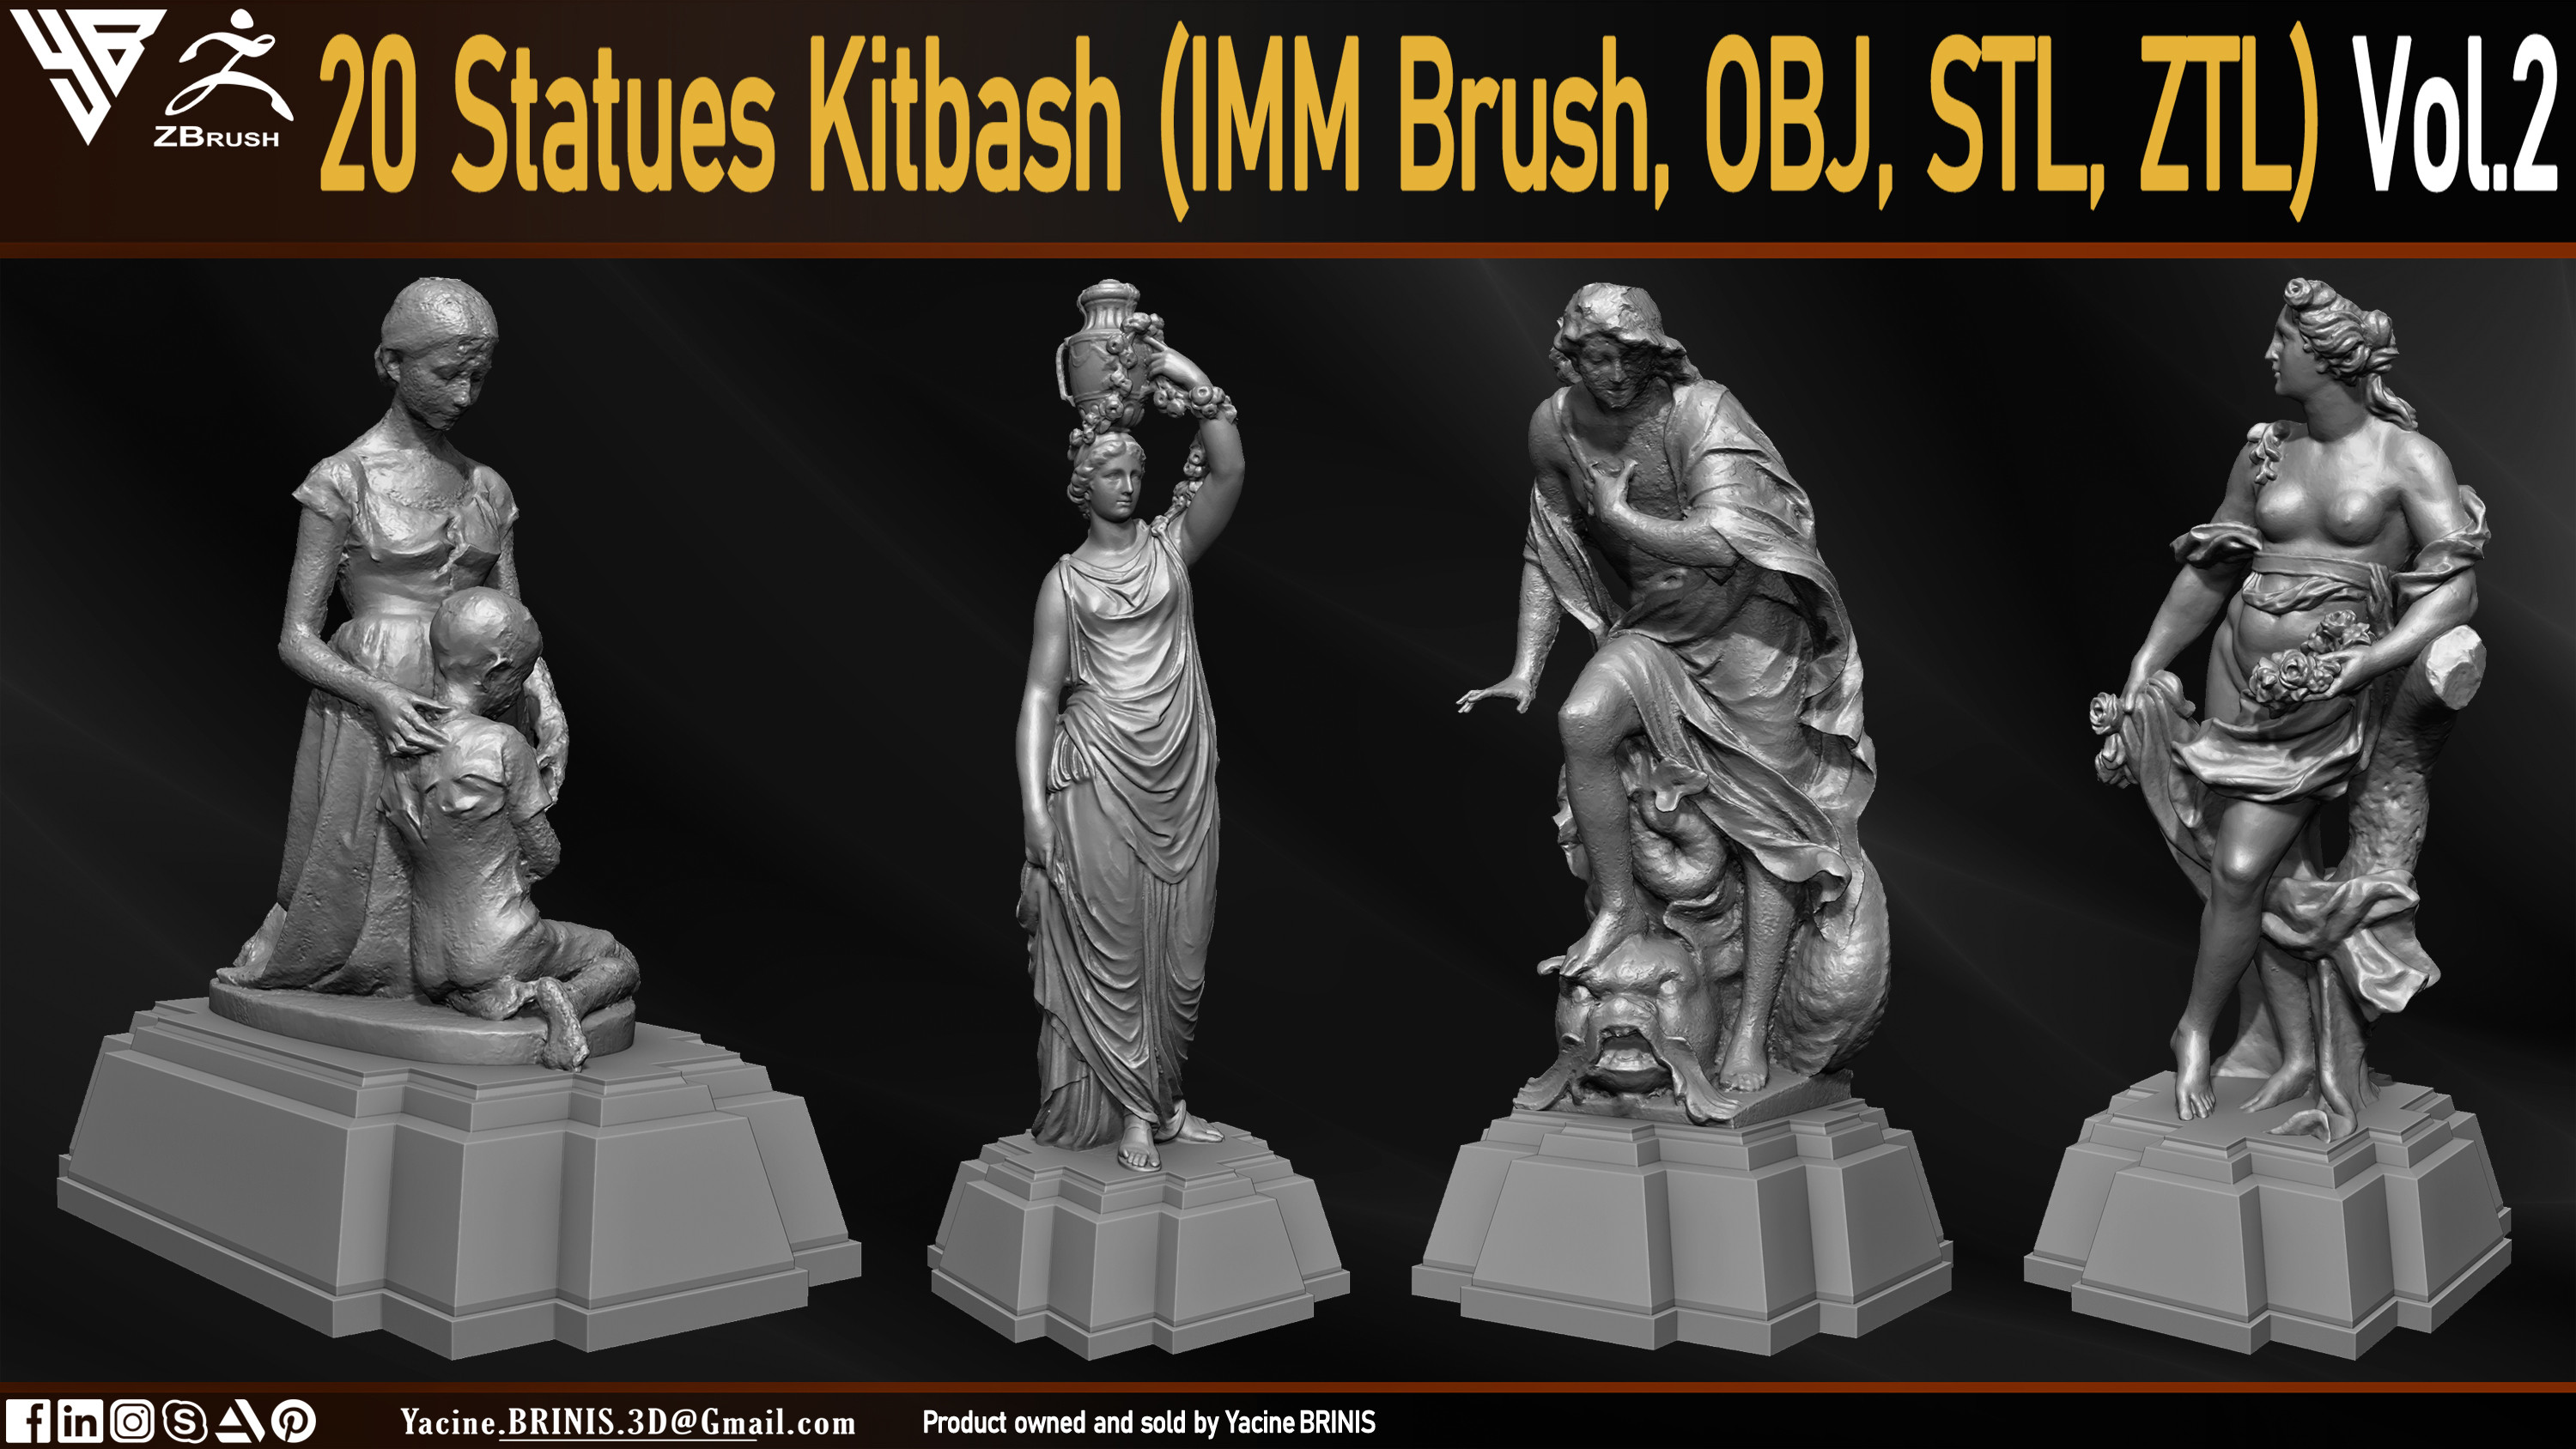 Statues Kitbash by yacine brinis Set 10